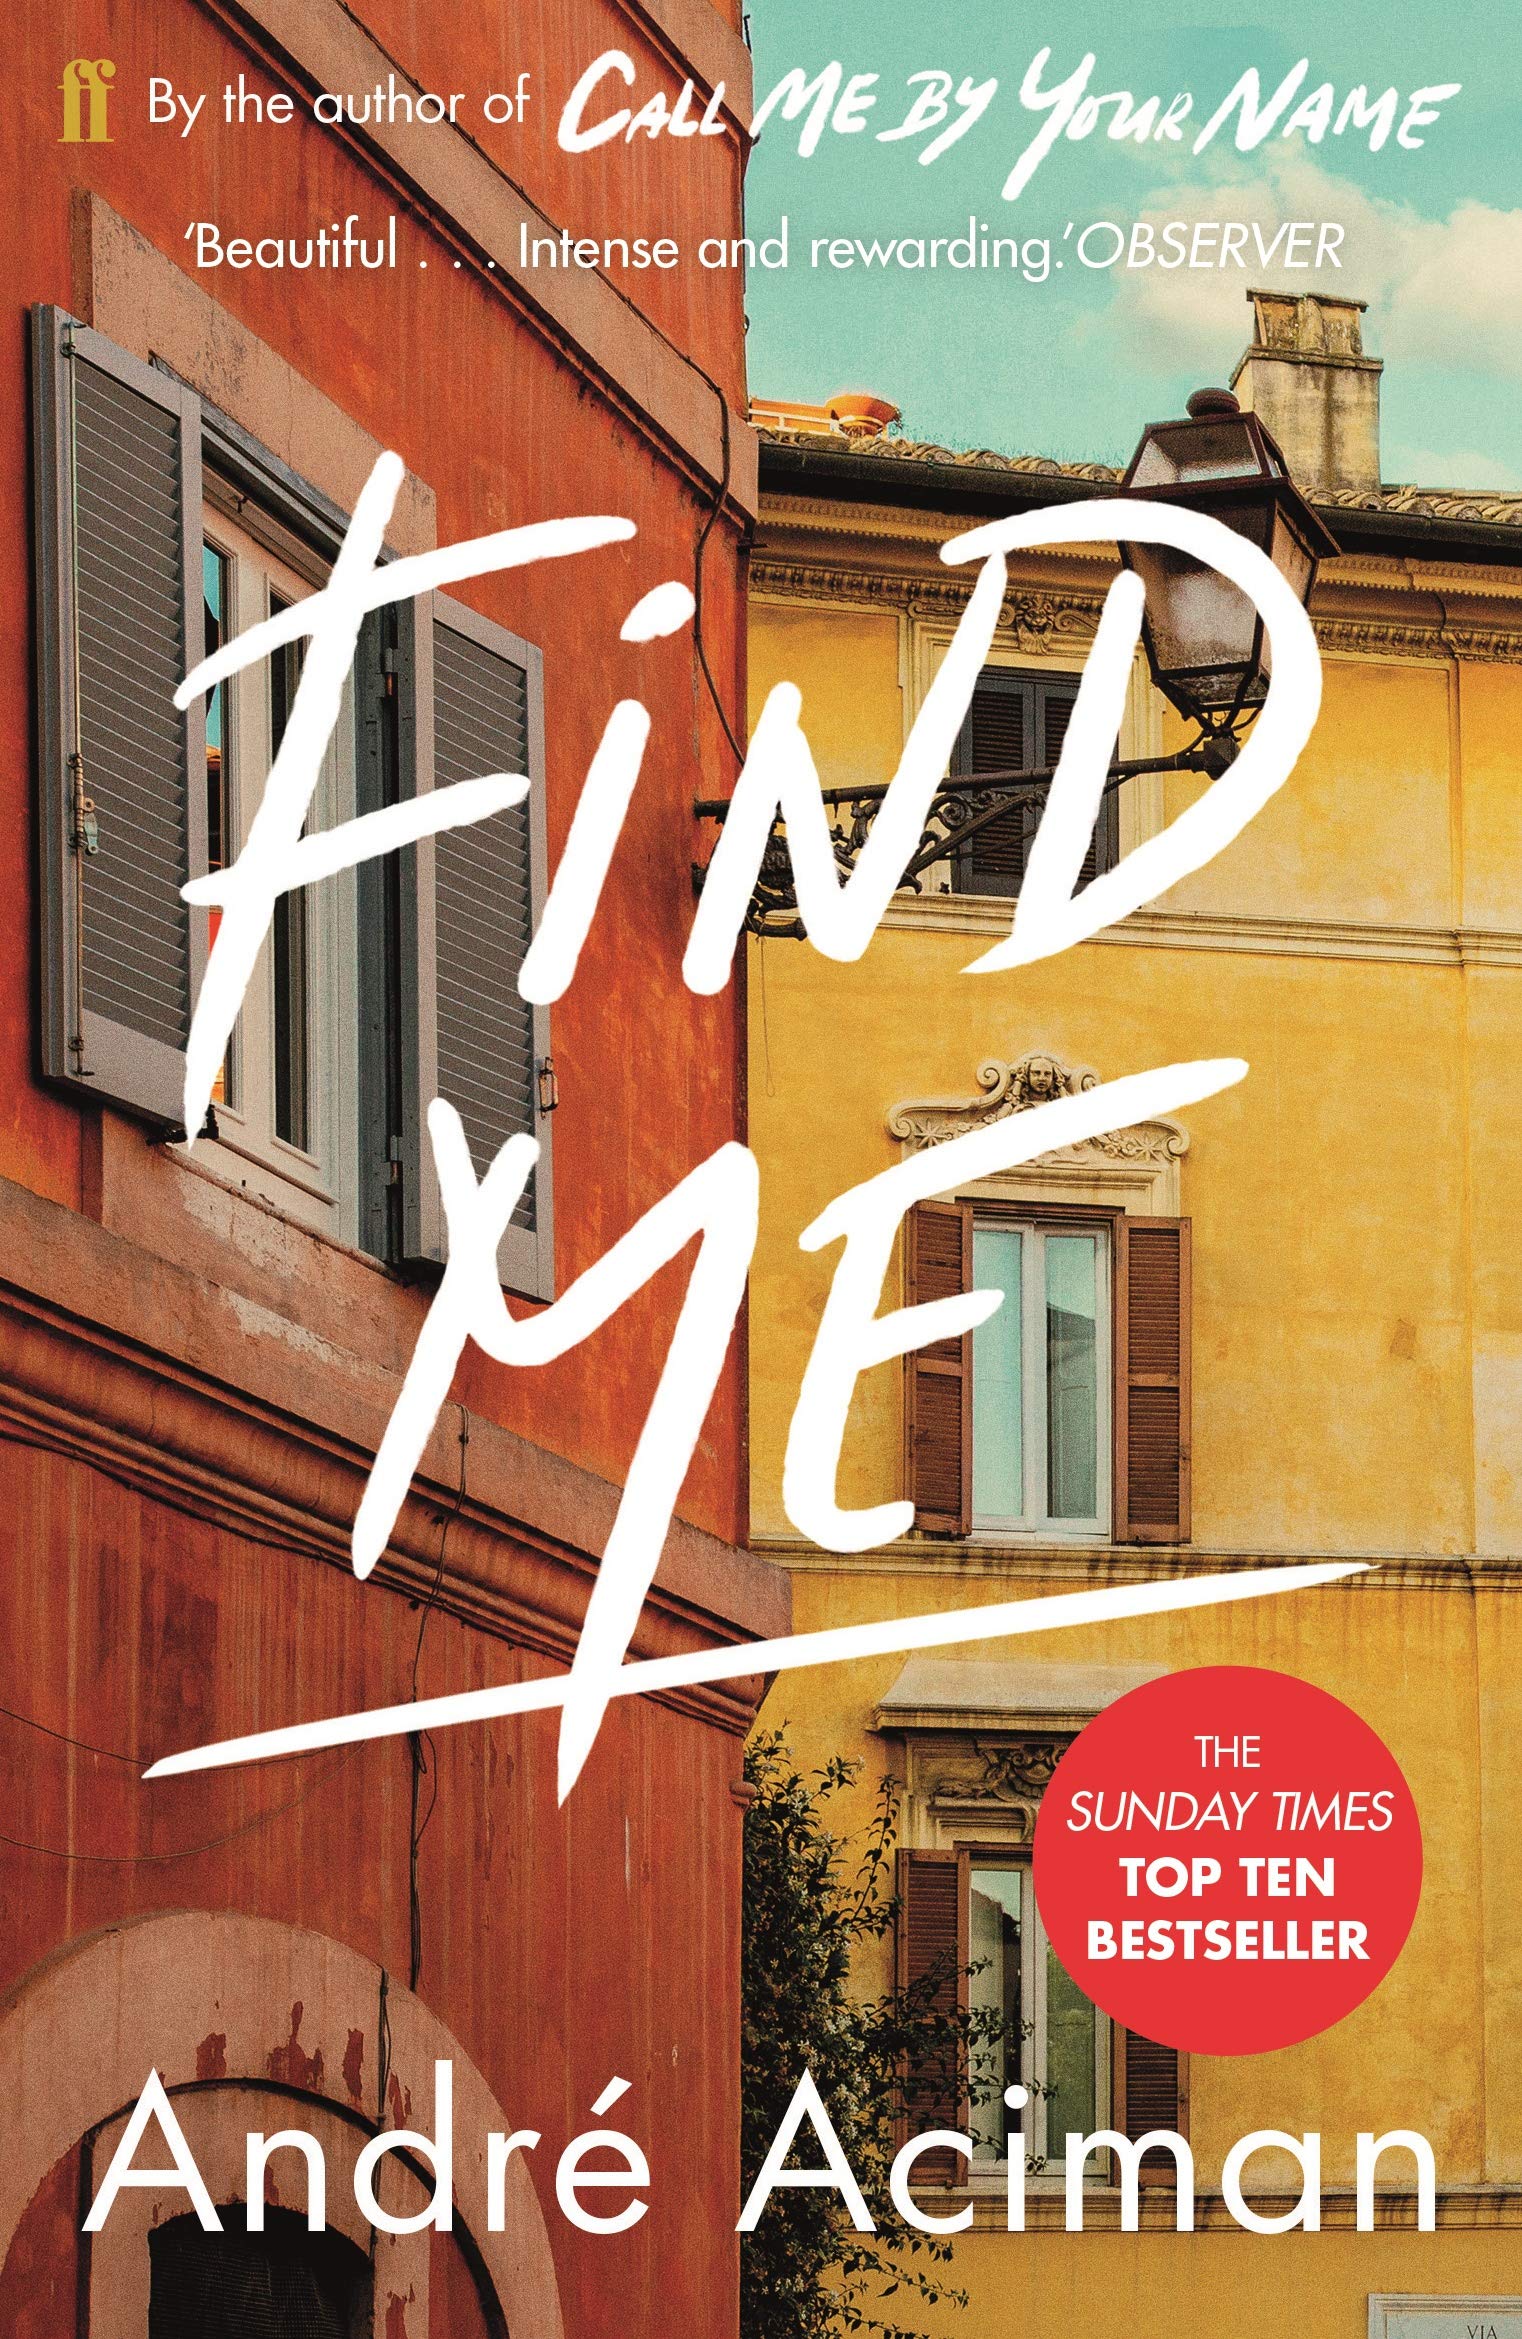 Find Me | Andre Aciman